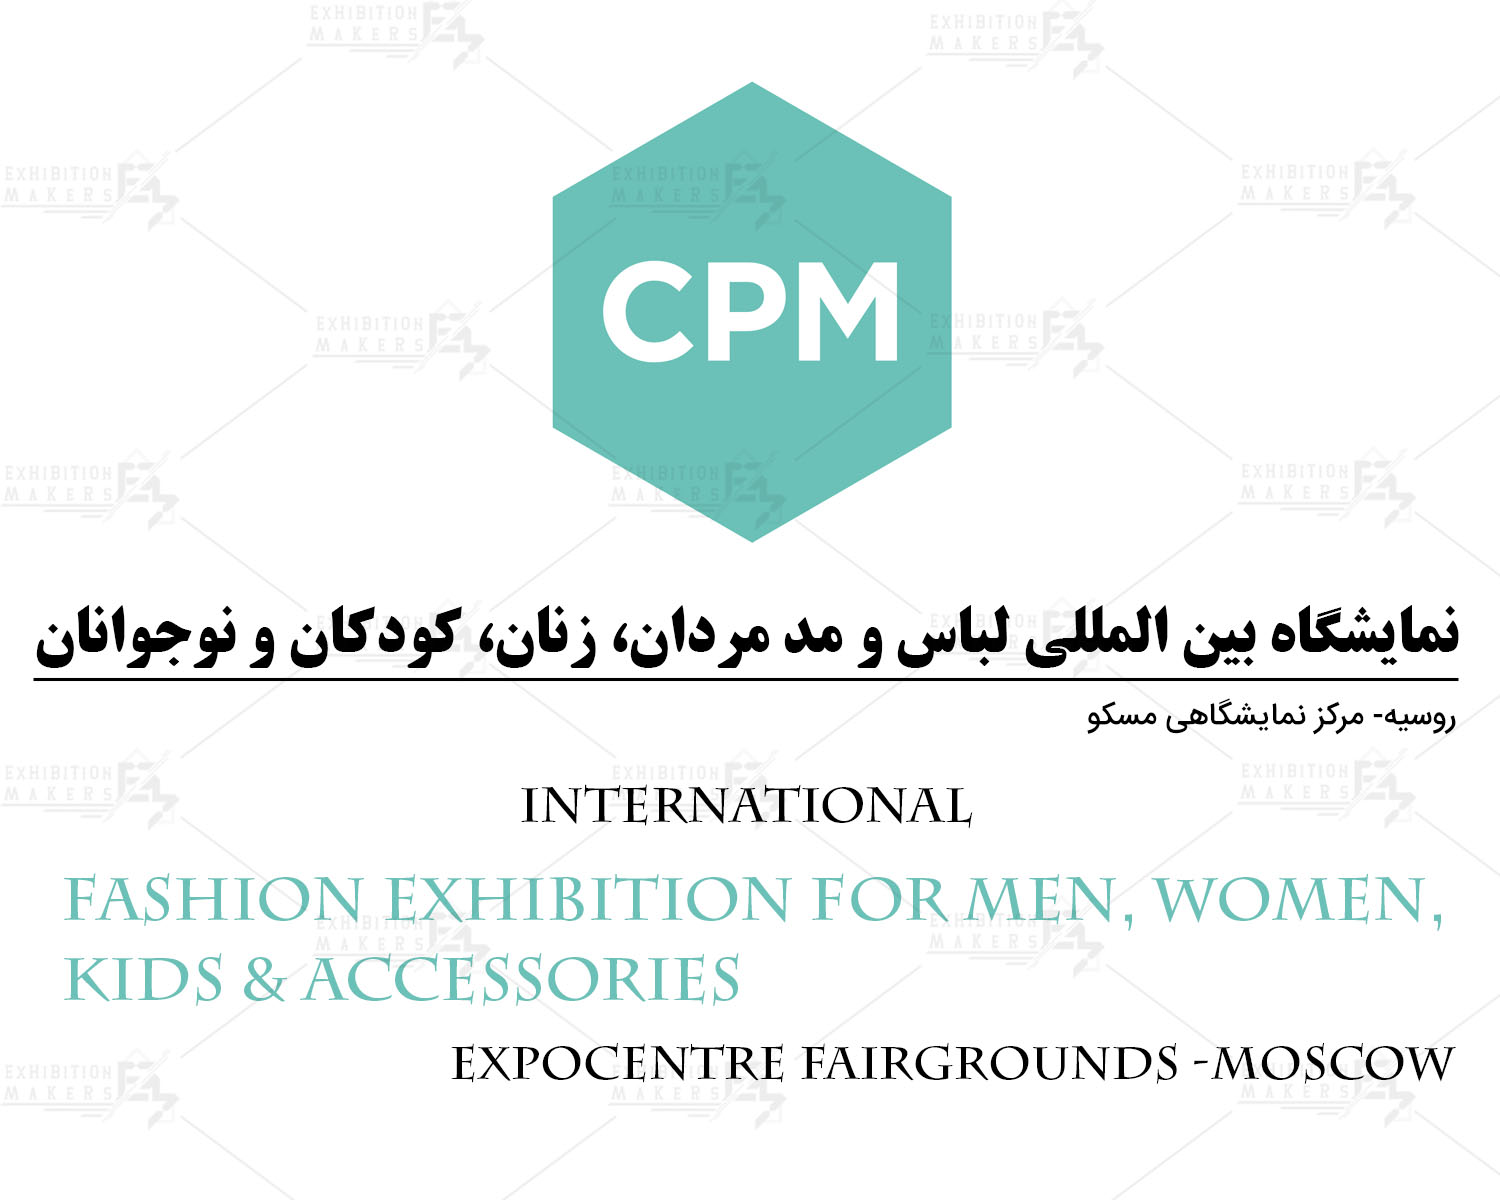 نمایشگاه بین المللی لباس و  مد مردان، زنان، کودکان و نوجوانان روسیه مسکو